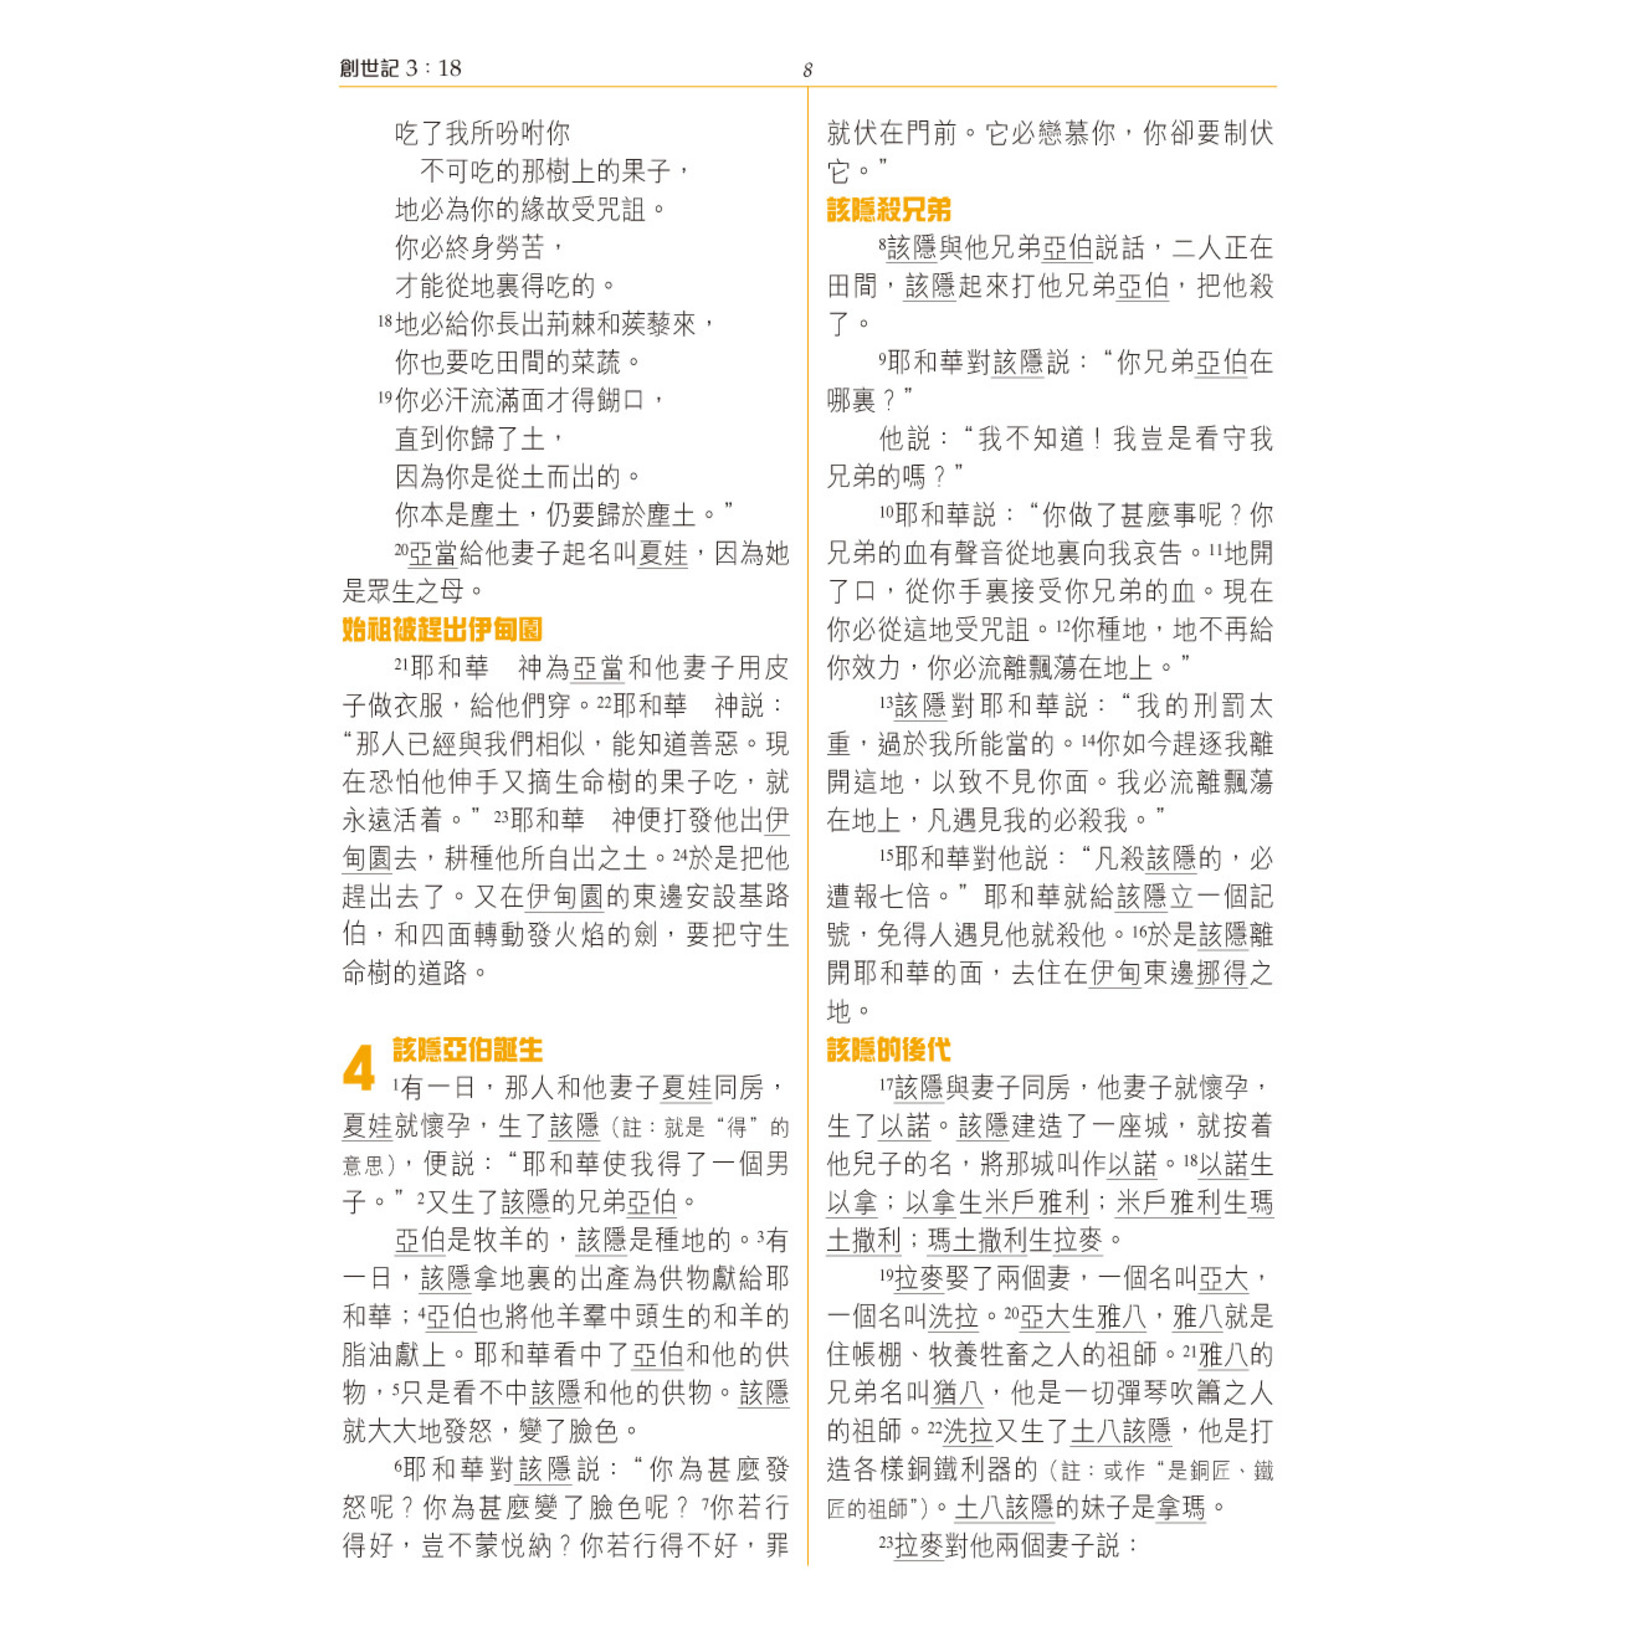 漢語聖經協會 Chinese Bible International 聖經和合本．職場事奉版．硬面．白邊（繁體）	The Maxwell Leadership Bible (Hardcover White Edge)